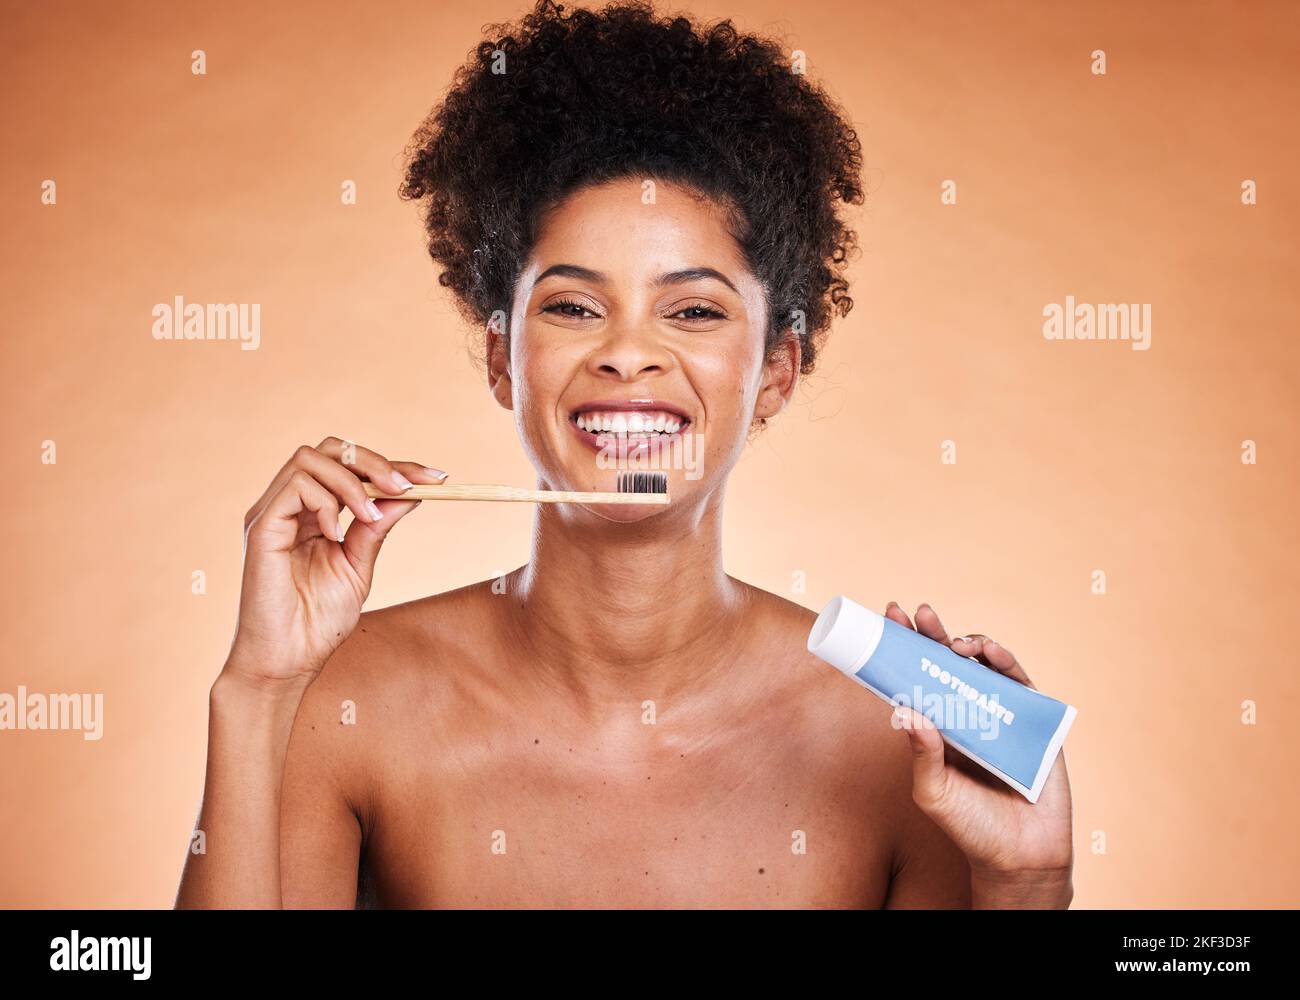 Femme noire, hygiène dentaire et brosse à dents avec dentifrice pour se brosser les dents et sourire. Santé bucco-dentaire, femme afro-américaine et femme de la bouche propre Banque D'Images